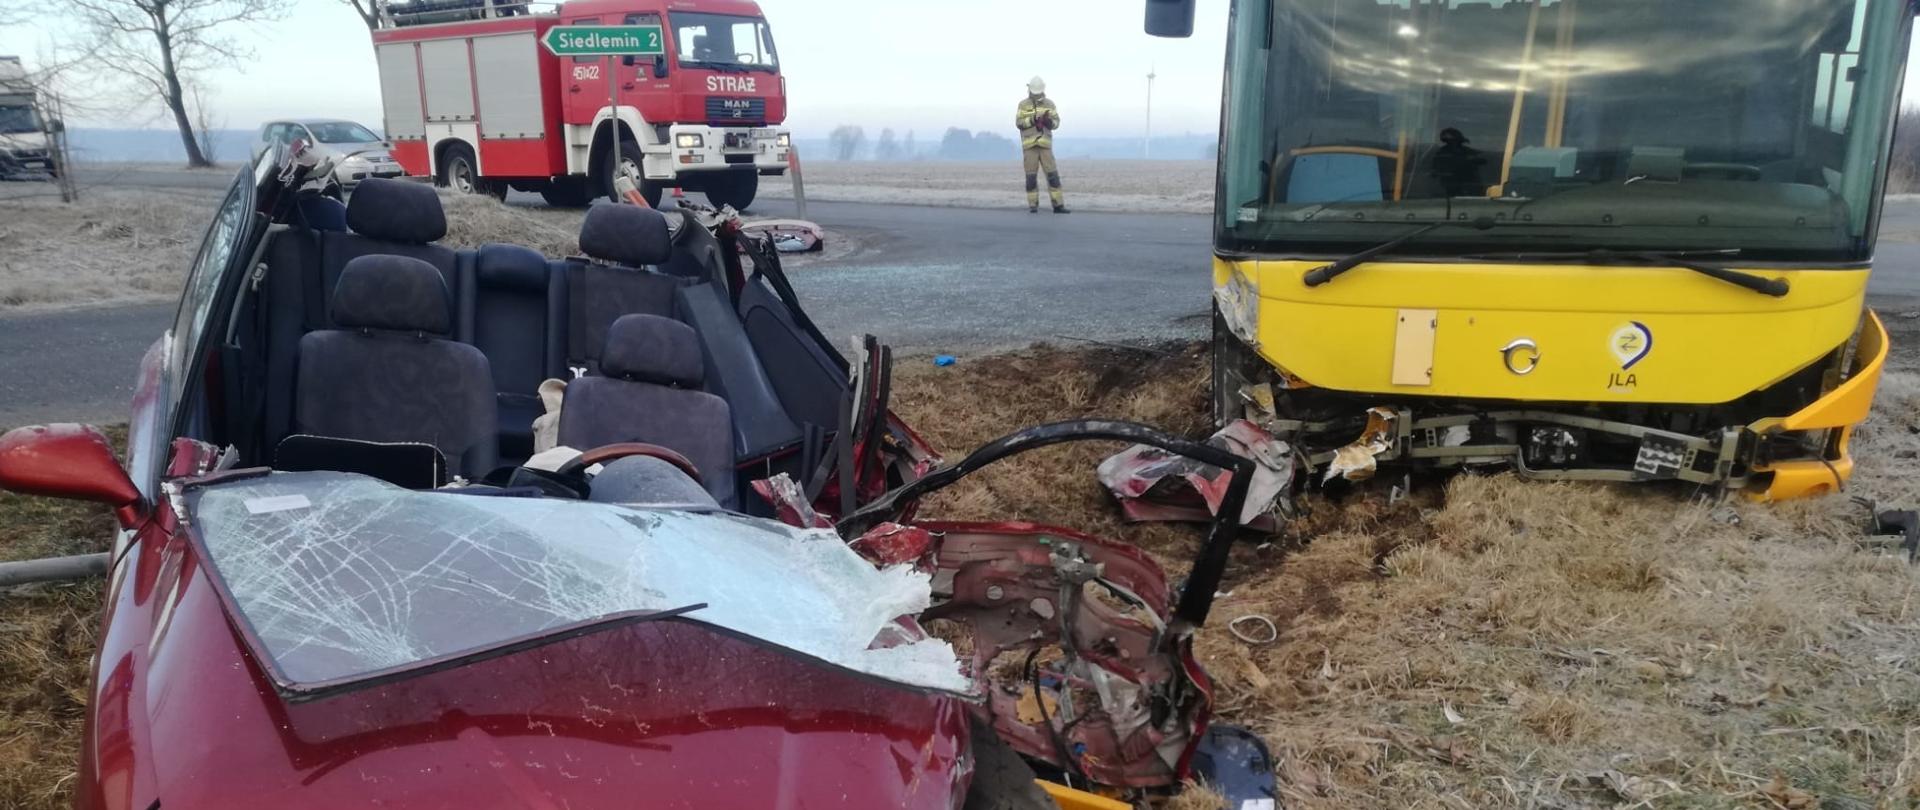 Wrak samochodu po wypadku, w tle uszkodzony autobus